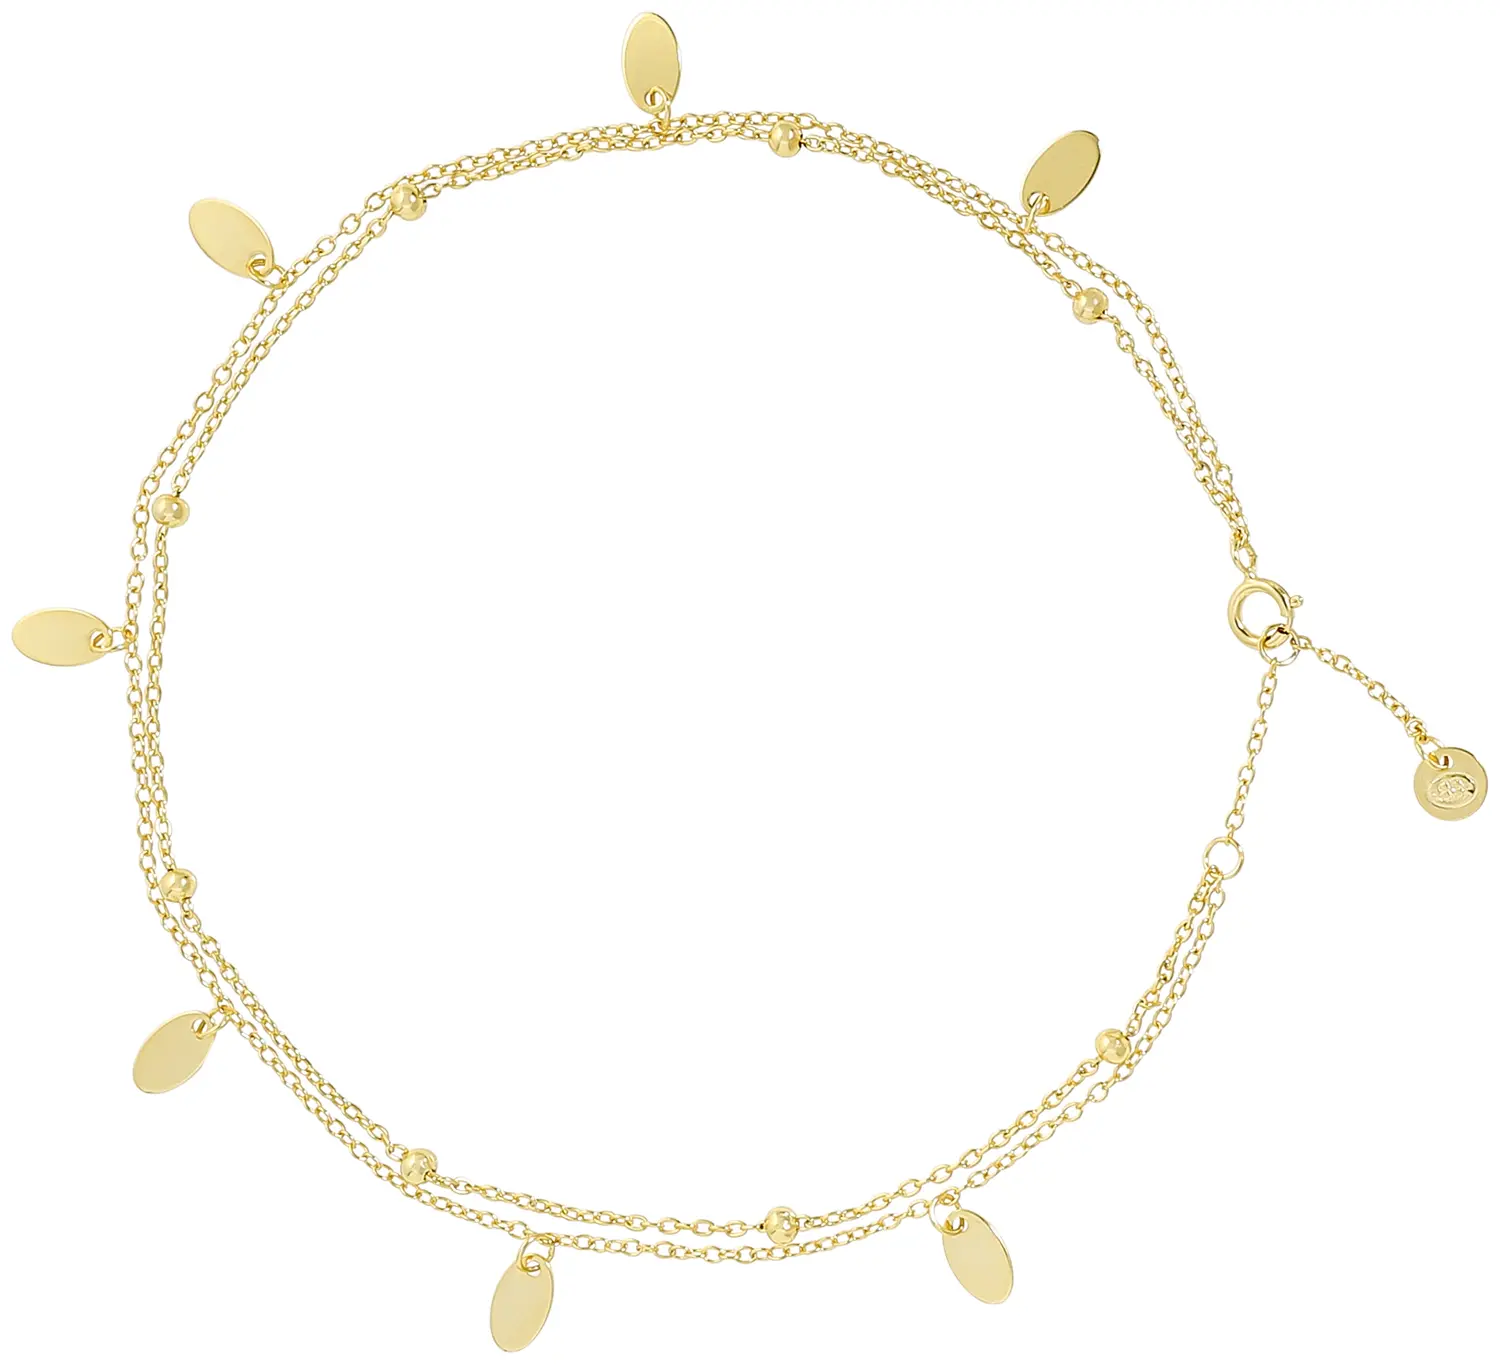 Bracelet de cheville - Wonderful Gold